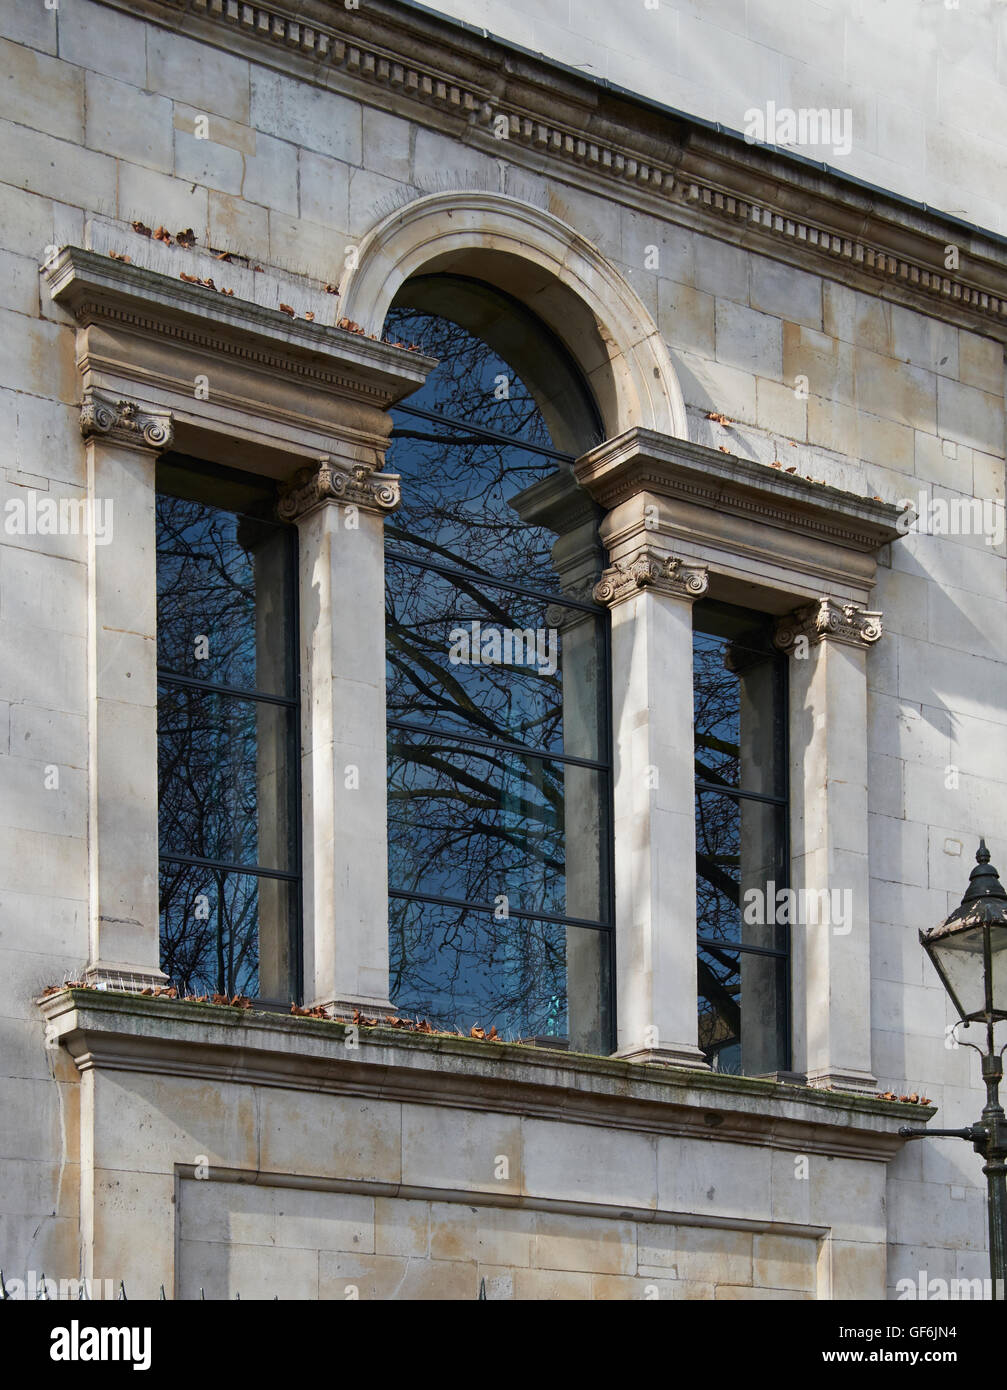 St Luke Old Street, venezianisches Fenster. Wahrscheinlich die Fugenausbildung von John James und Nicholas Hawksmoor, 1727-1733. Stockfoto